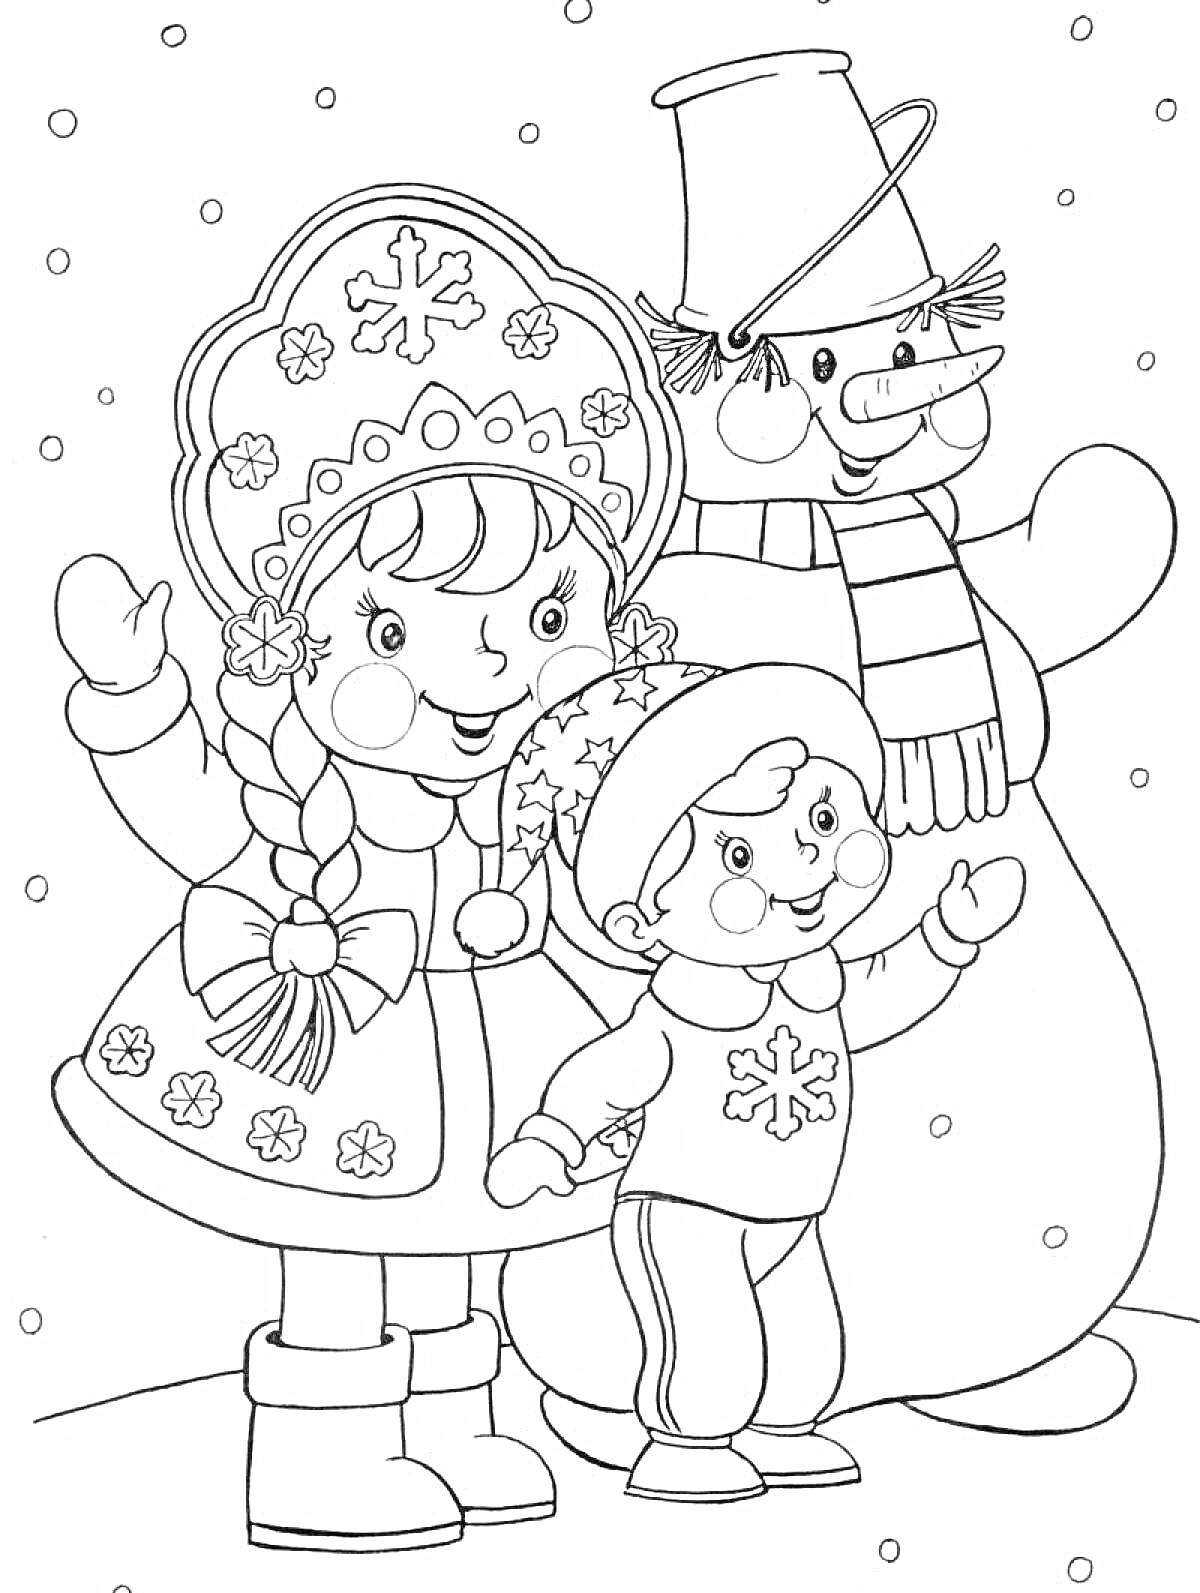 Раскраска Снегурочка с косичками, малыш в зимней одежде и снеговик с шапкой, шарфом и метлой на фоне падающего снега